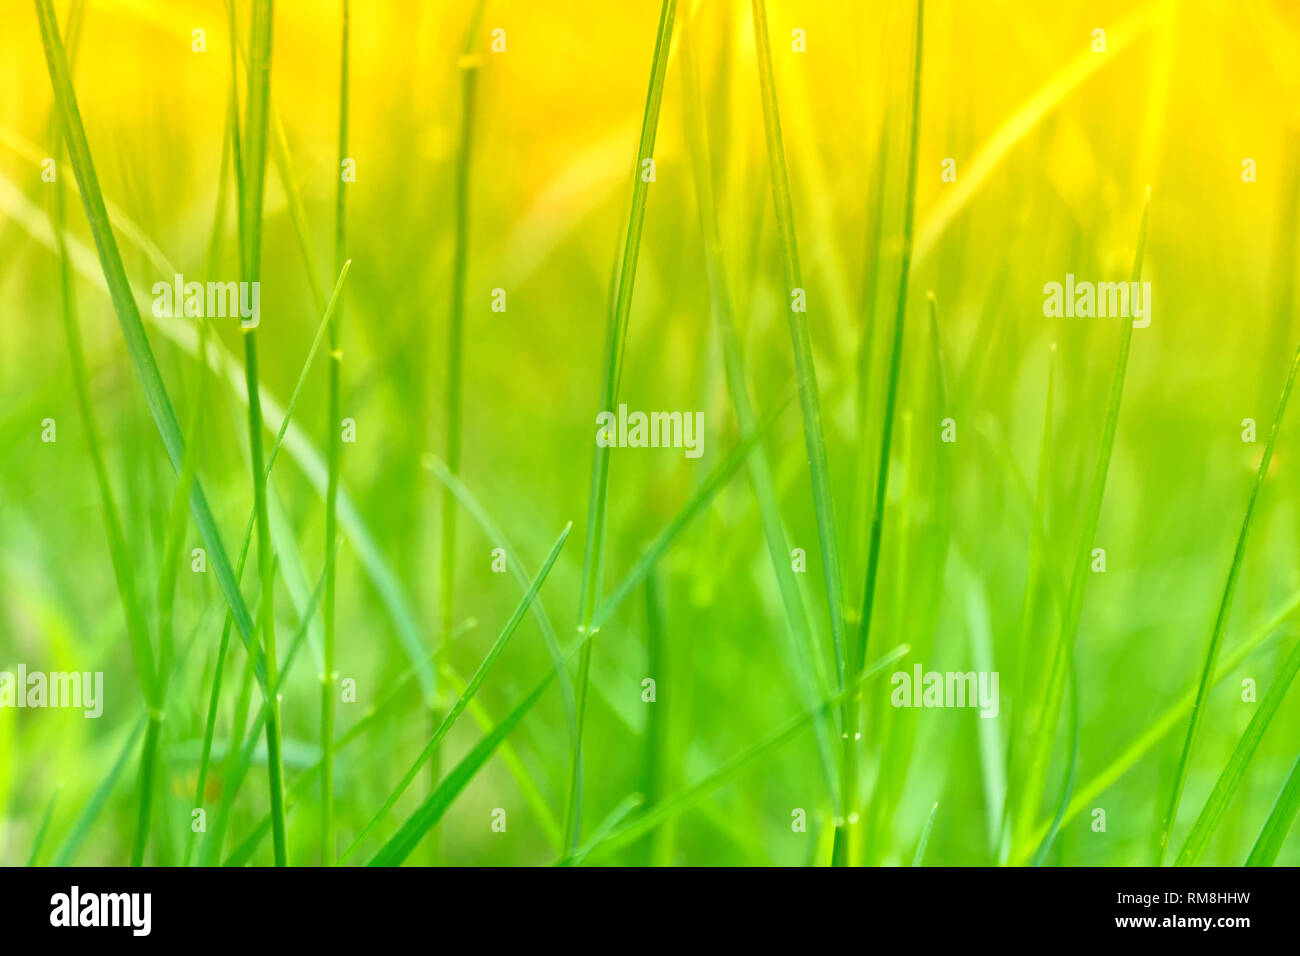 Kunst Abstrakte Frühling grüner und gelber Hintergrund oder natürlichen Hintergrund mit frischem Gras. Selektive konzentrieren. Stockfoto